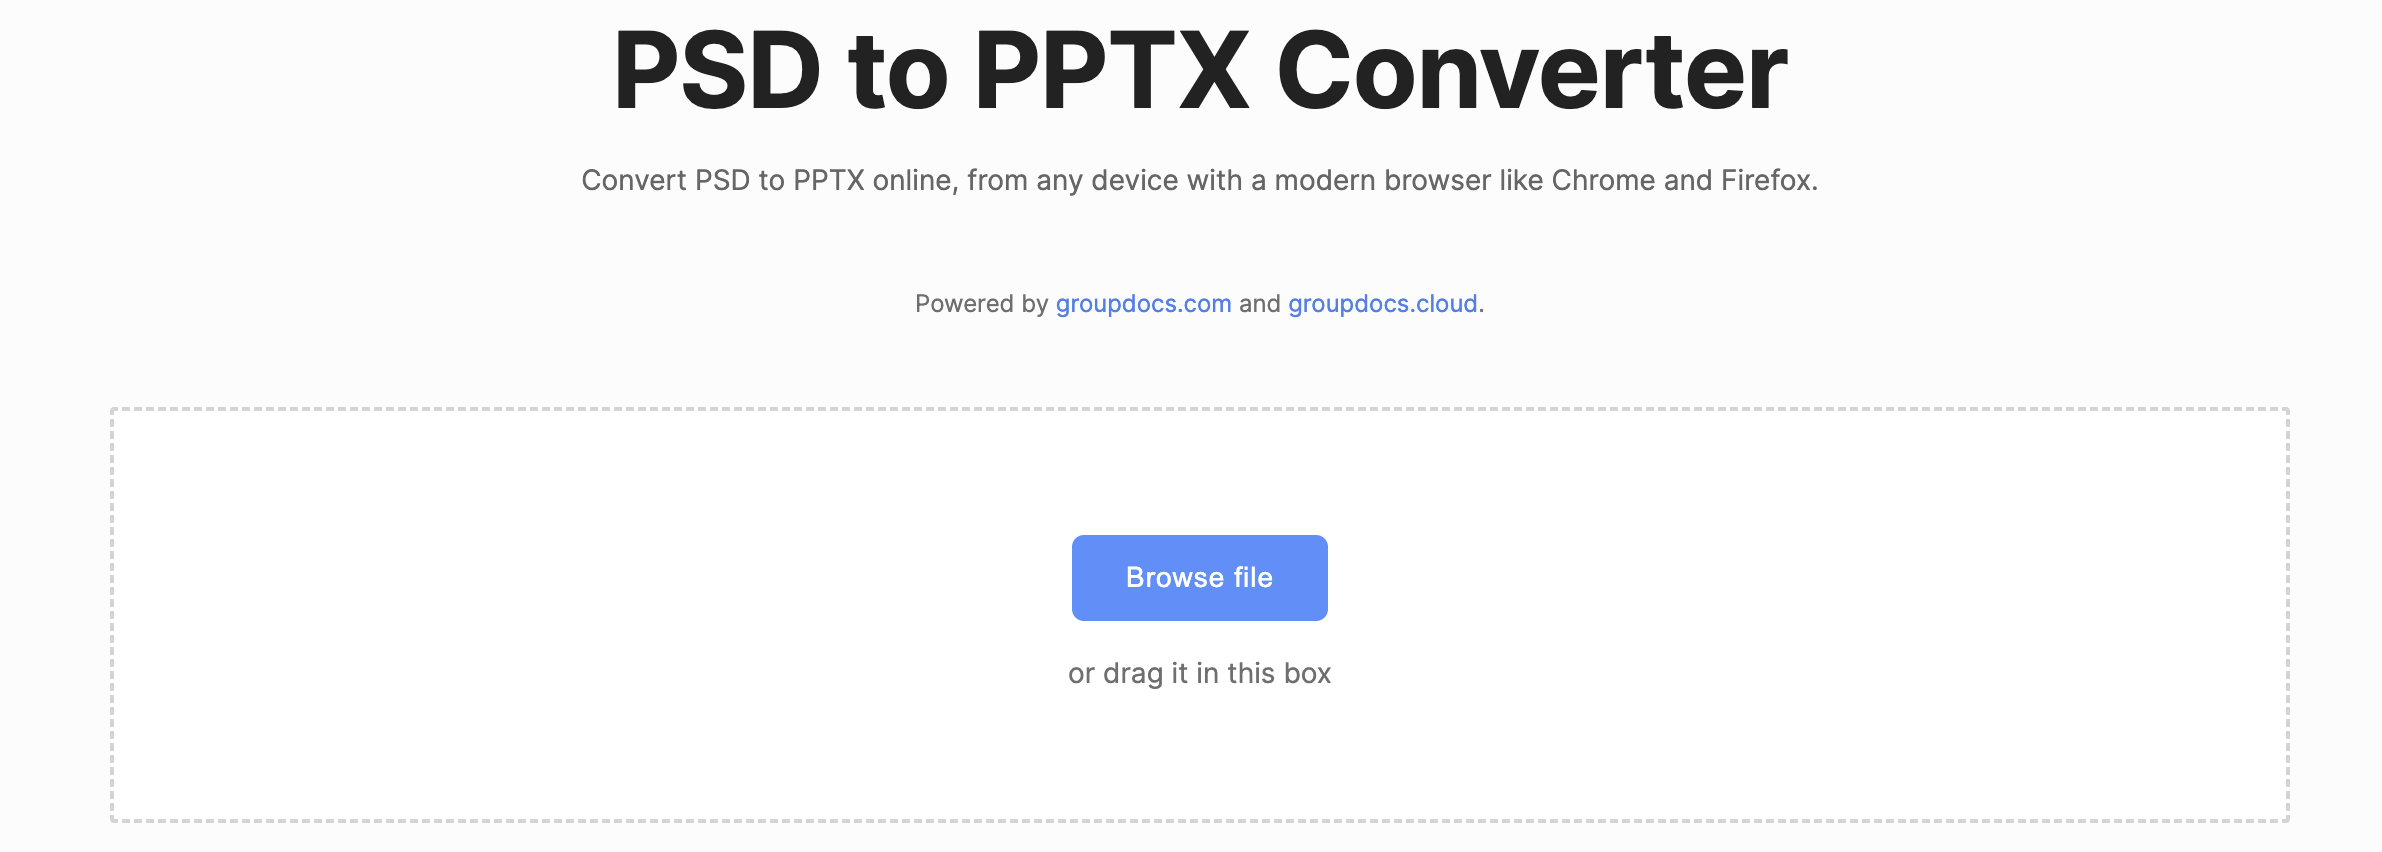 convertir psd a pptx en línea